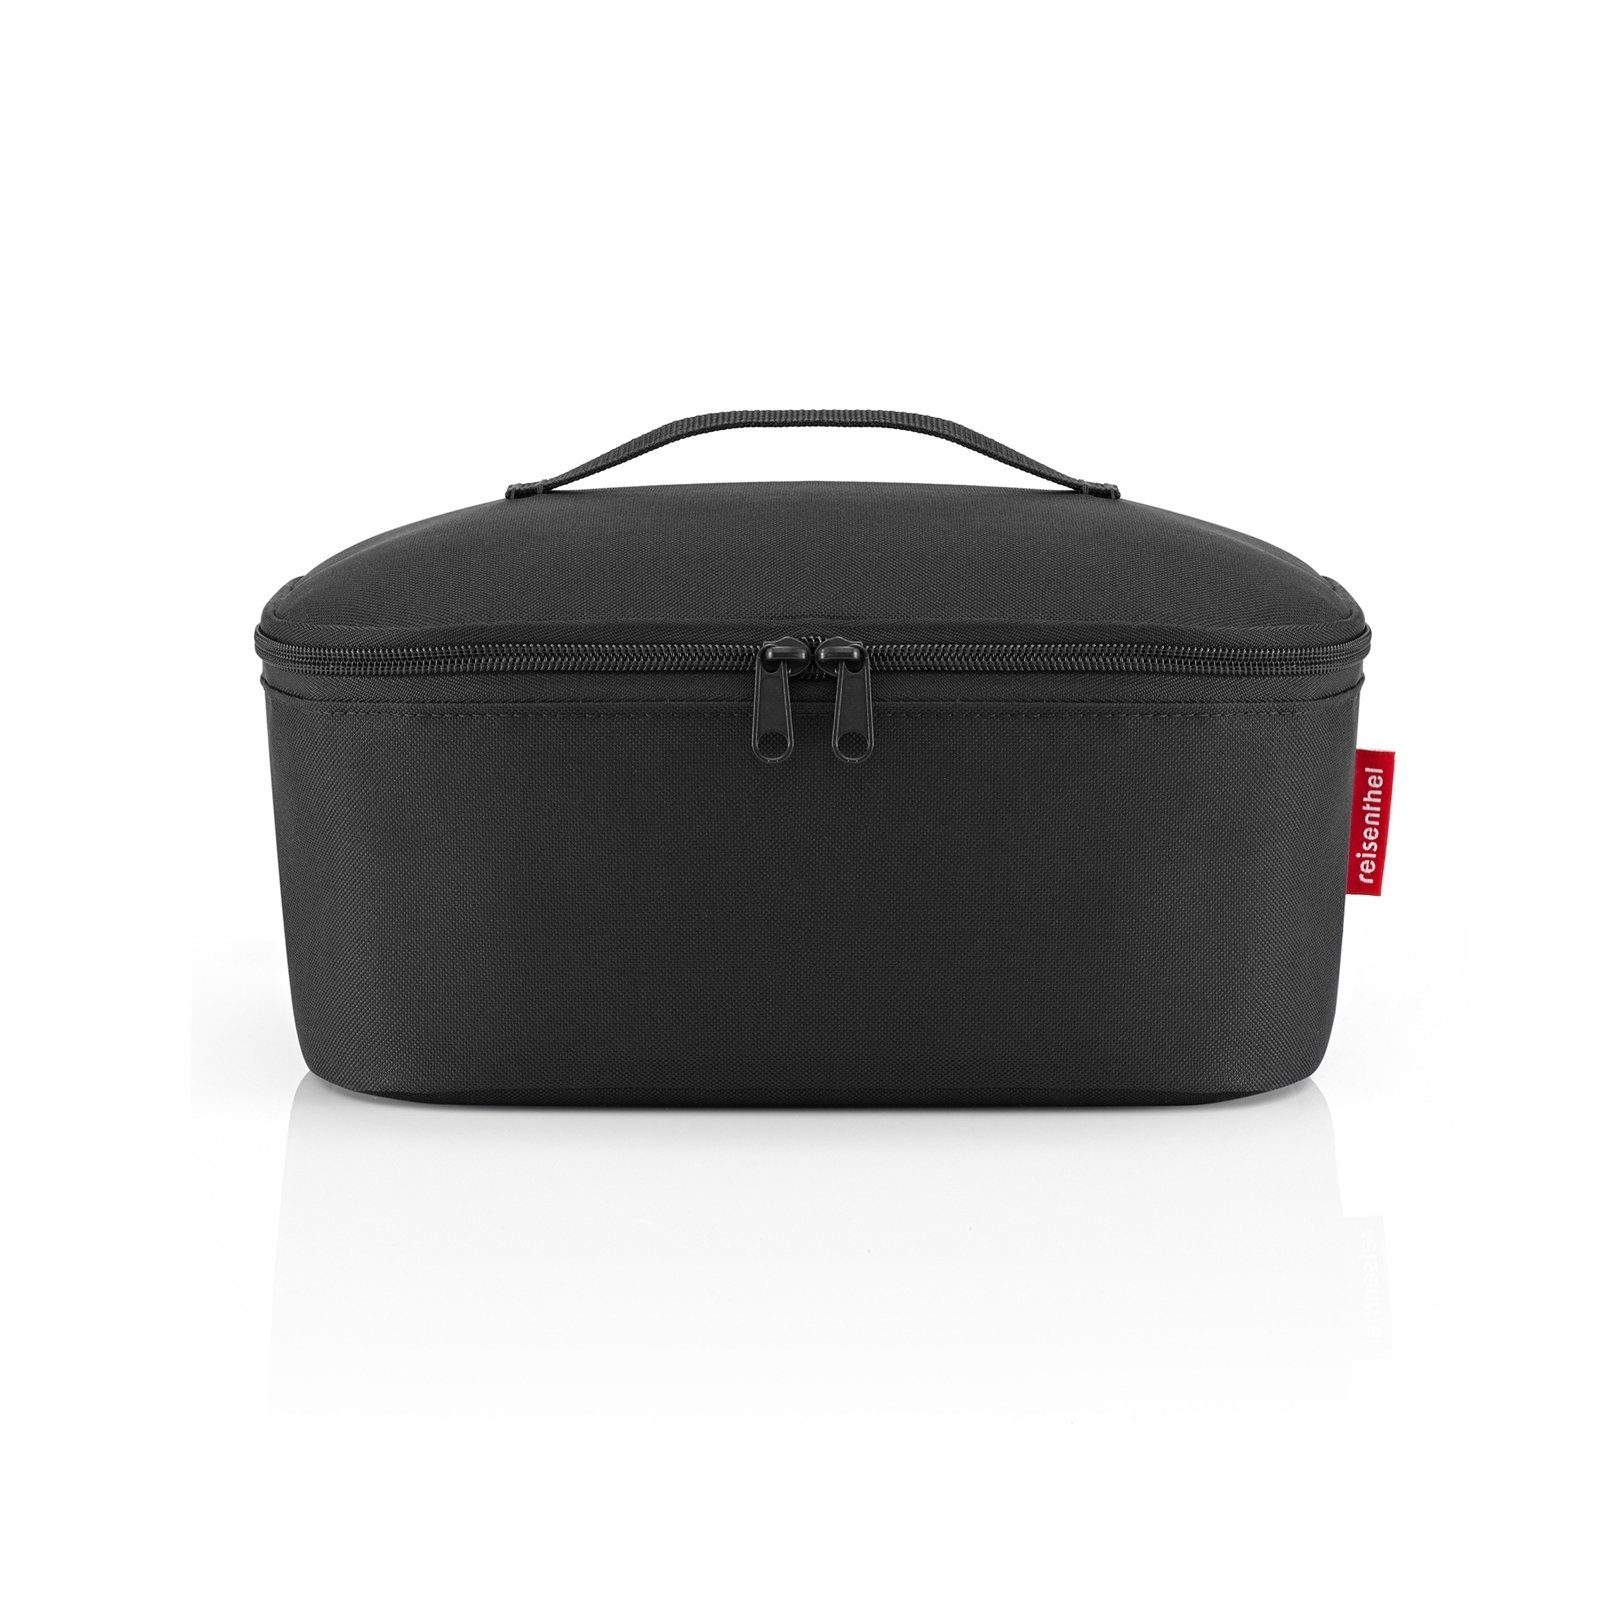 Pocket, 4.5 l Coolerbag Shopping, REISENTHEL® M Einkaufsshopper Kühltasche black